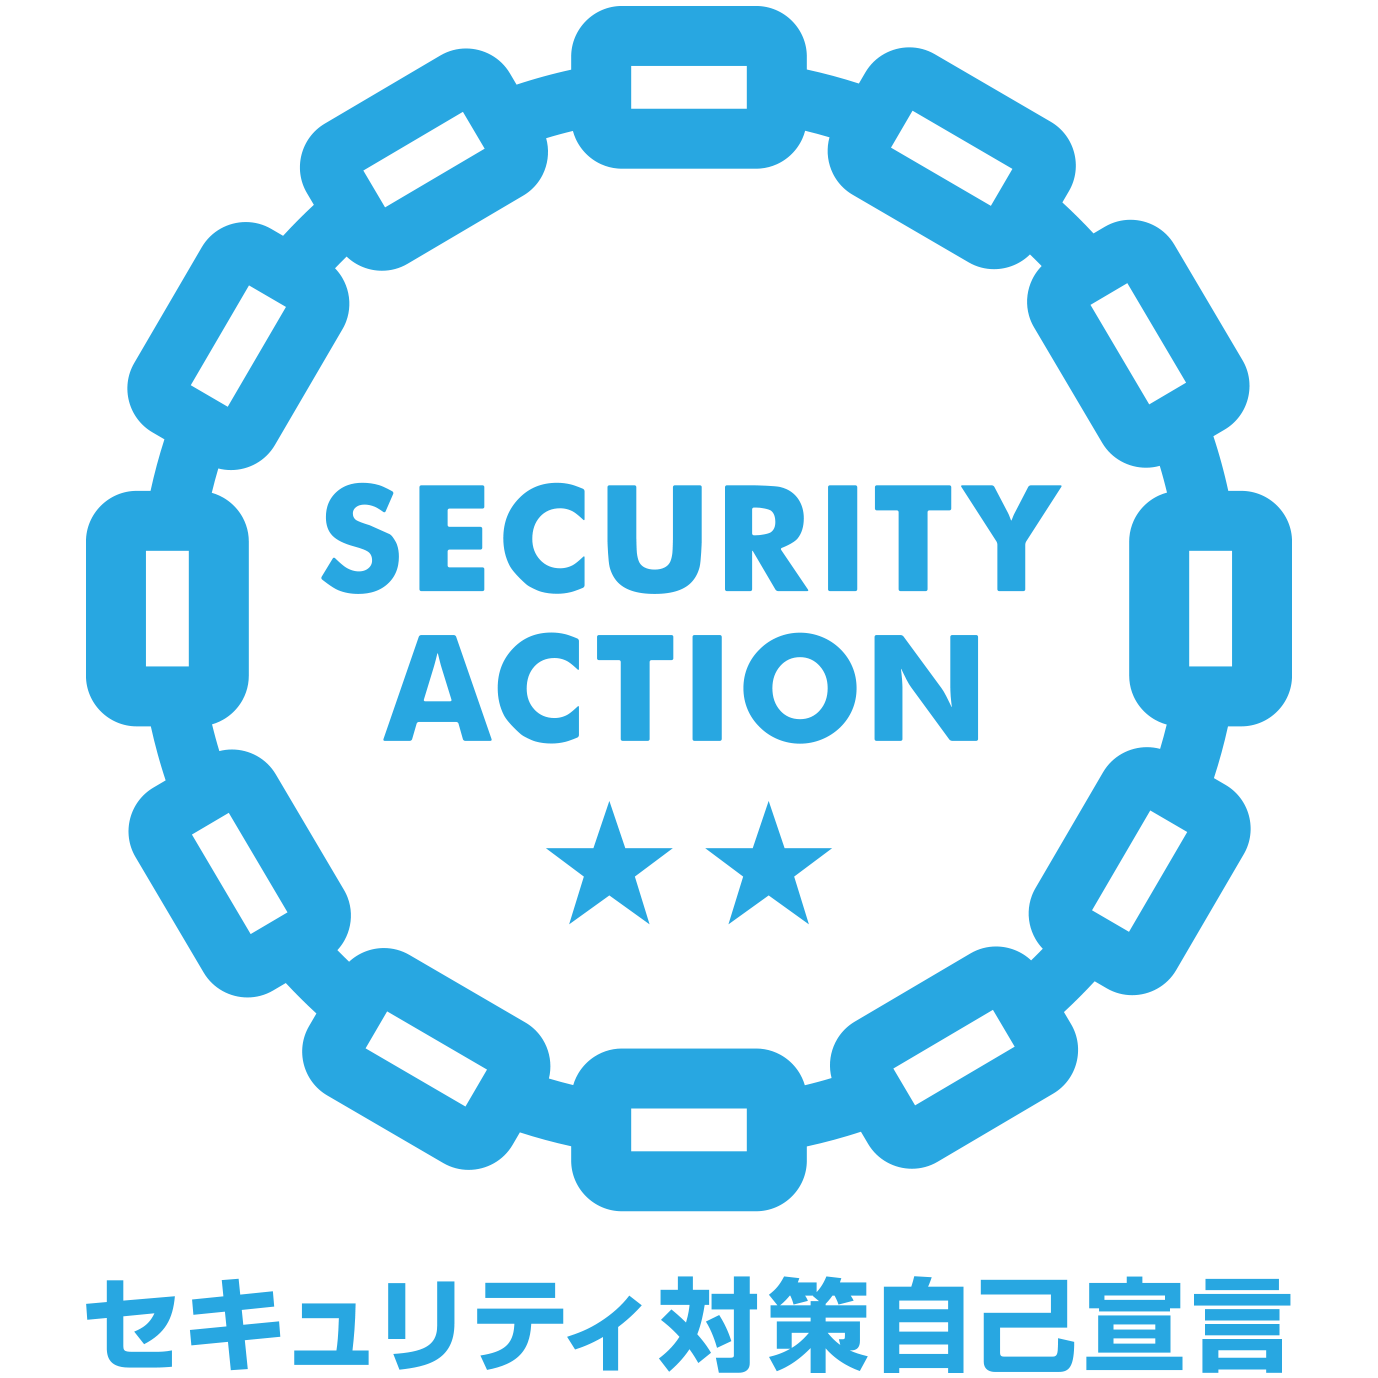 SecurityAction